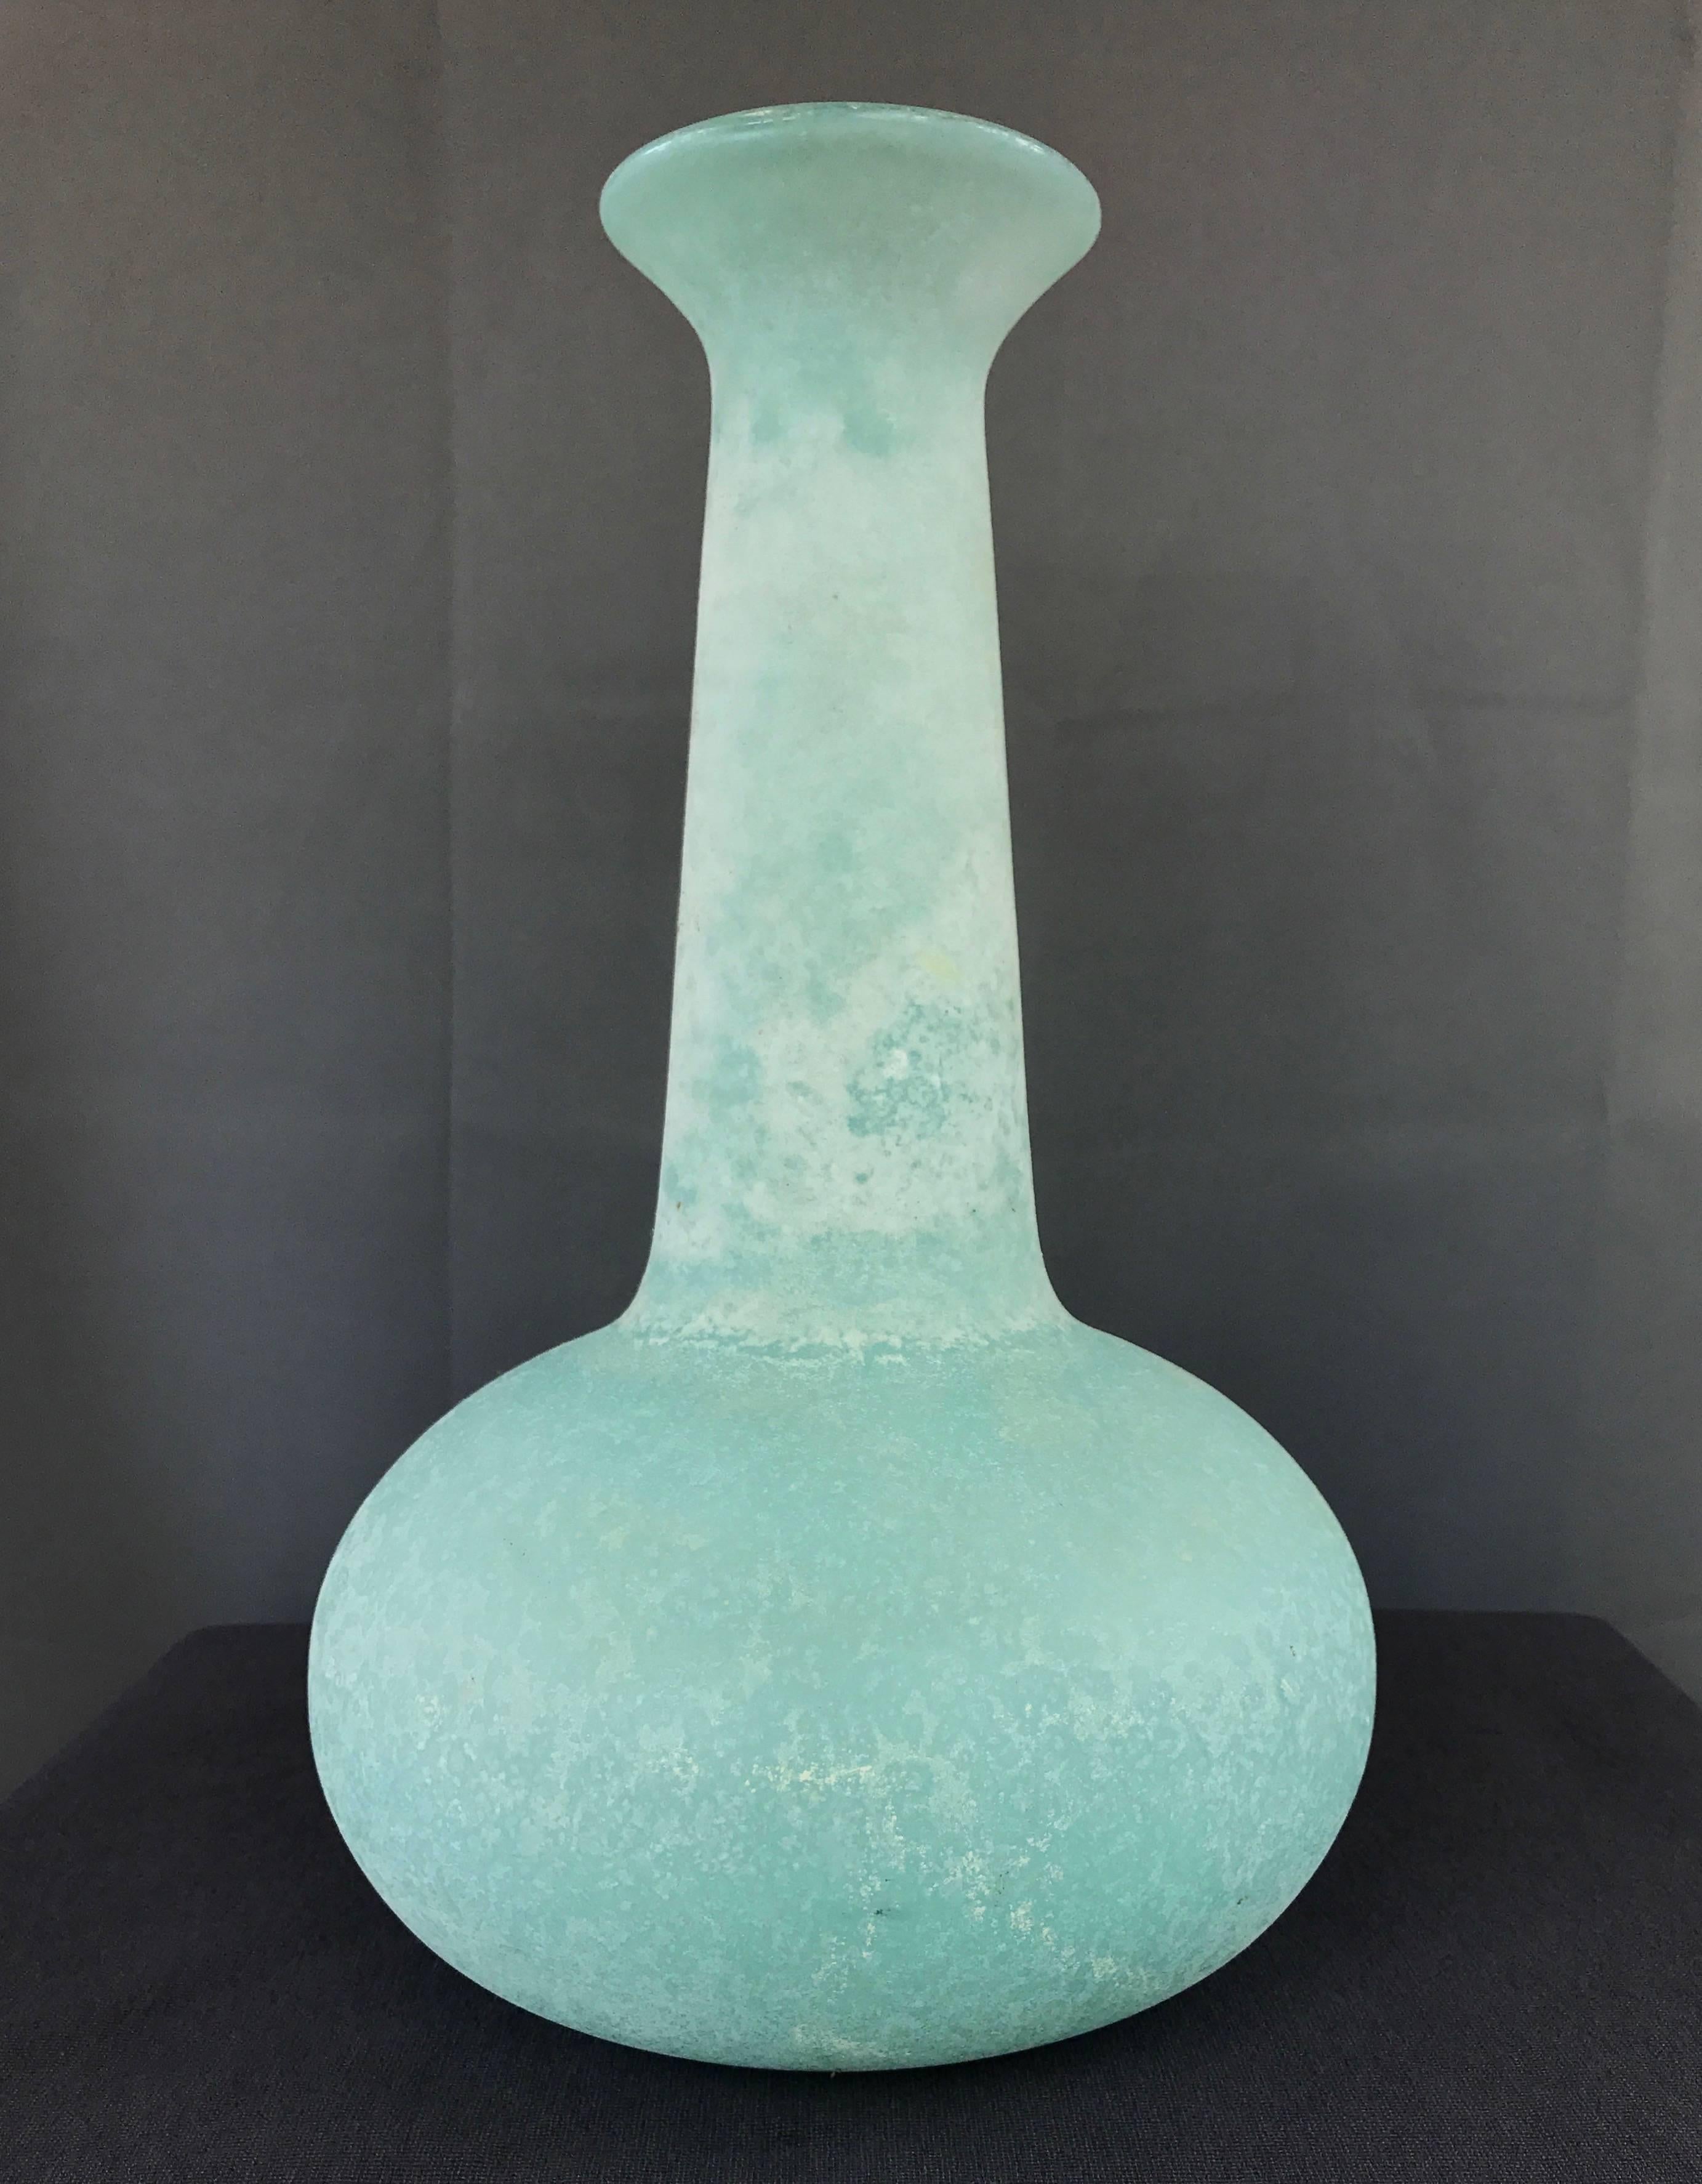 Eine hohe Scavo- oder Corroso-Glasvase des Studios Cenedese aus Murano.

Großer mundgeblasener Körper mit Zwiebelsockel und länglichem Hals mit ausgestellter Lippe. Das leuchtende Puderblau in Kombination mit dem frostigen Weiß der Oberfläche